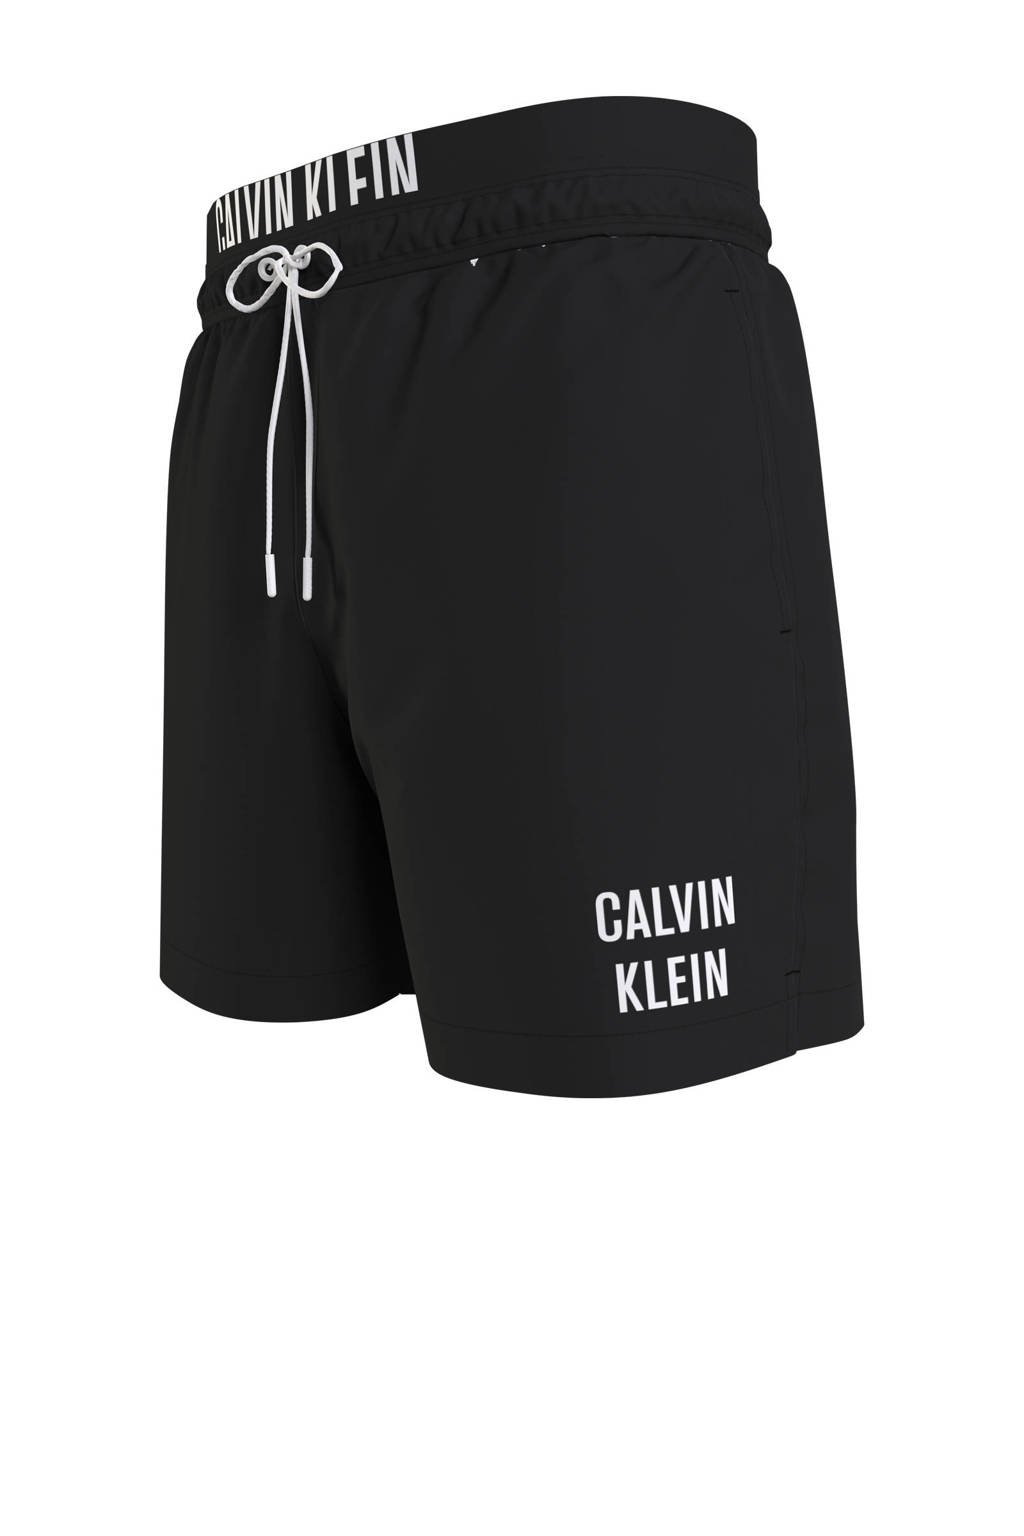 donker Perioperatieve periode etiquette Calvin Klein zwemshort zwart kopen? | Morgen in huis | wehkamp